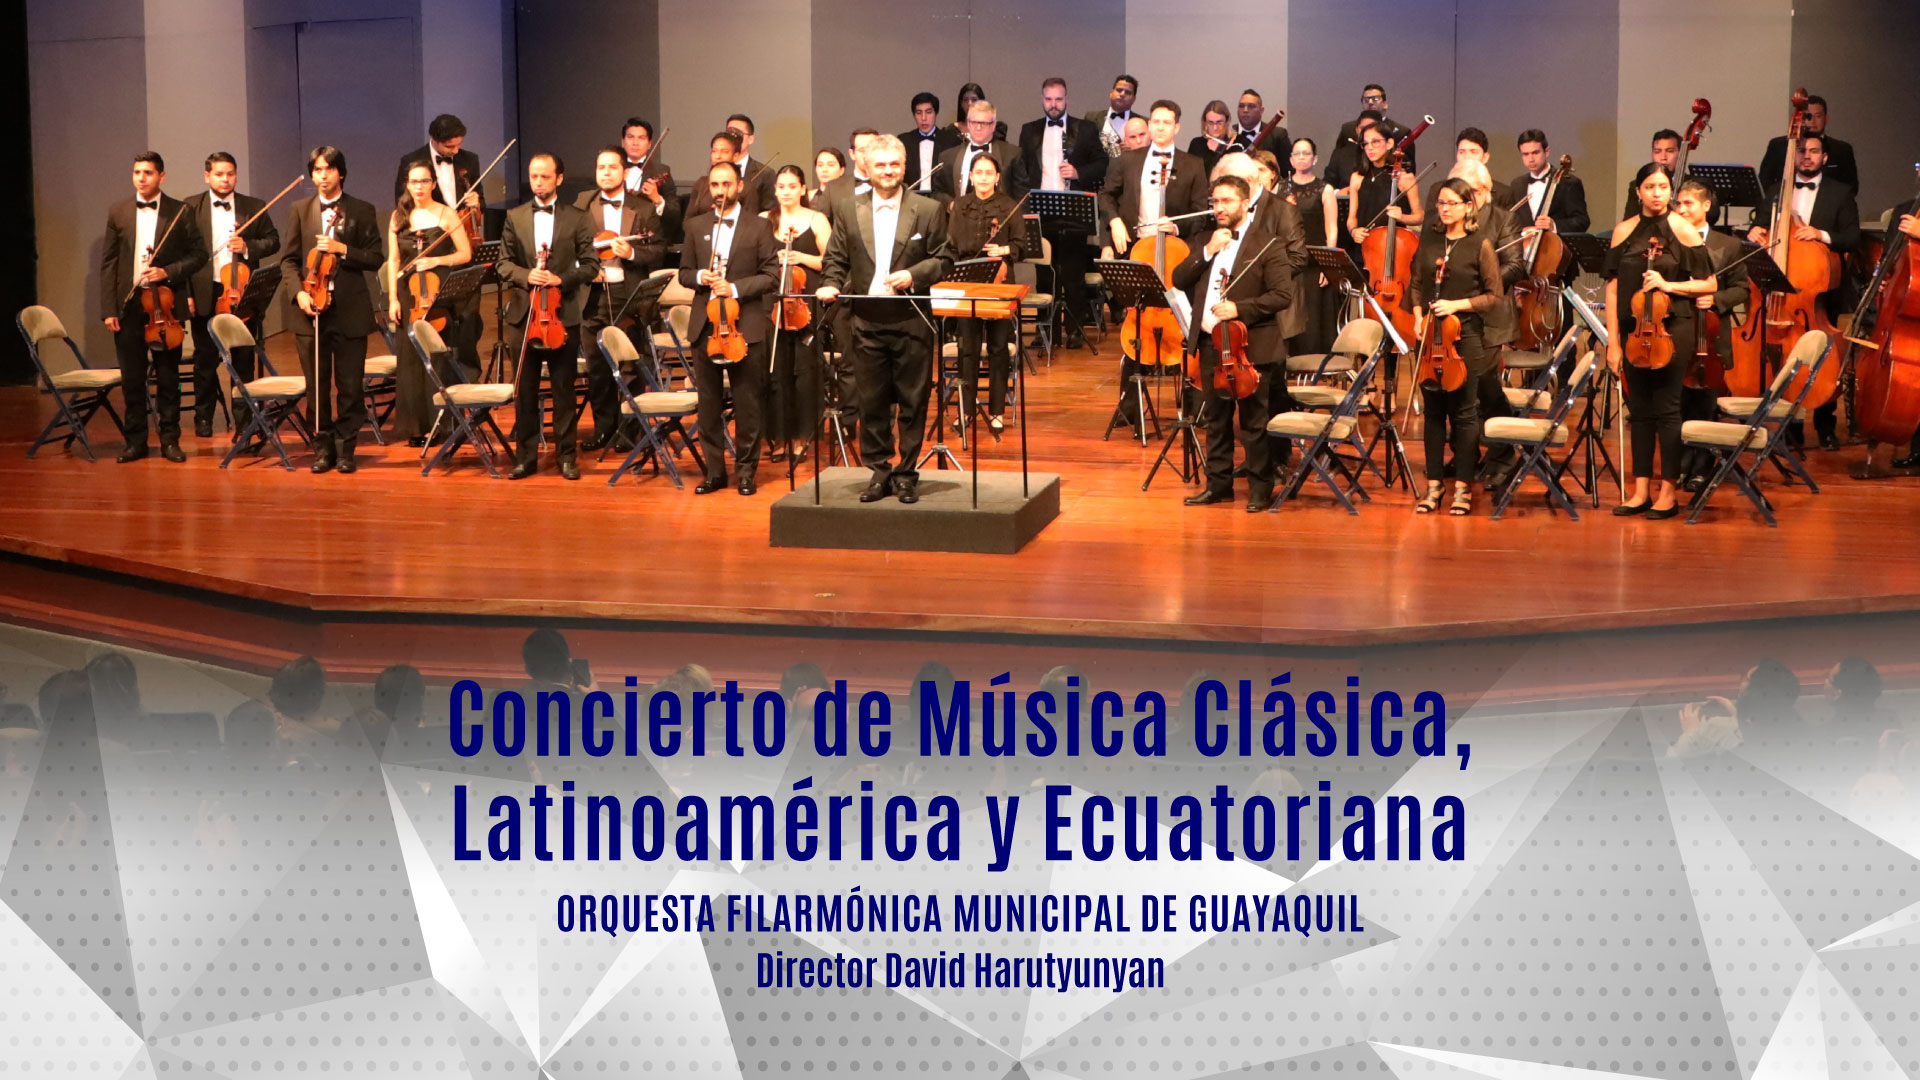 concierto-musica-clasica-latinoamericana-ecuatoriana